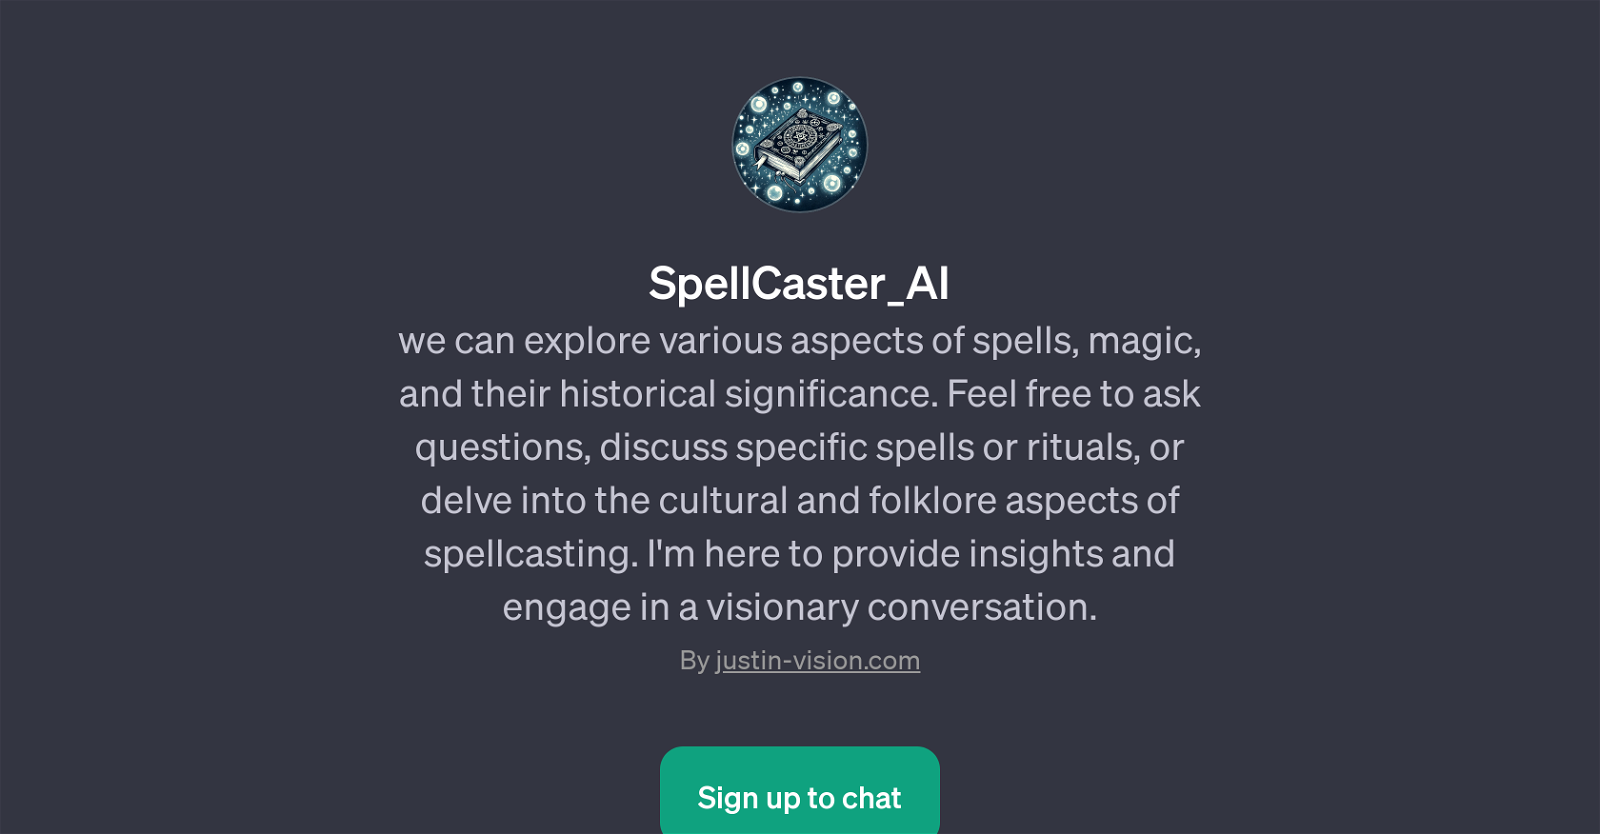 SpellCaster_AI website